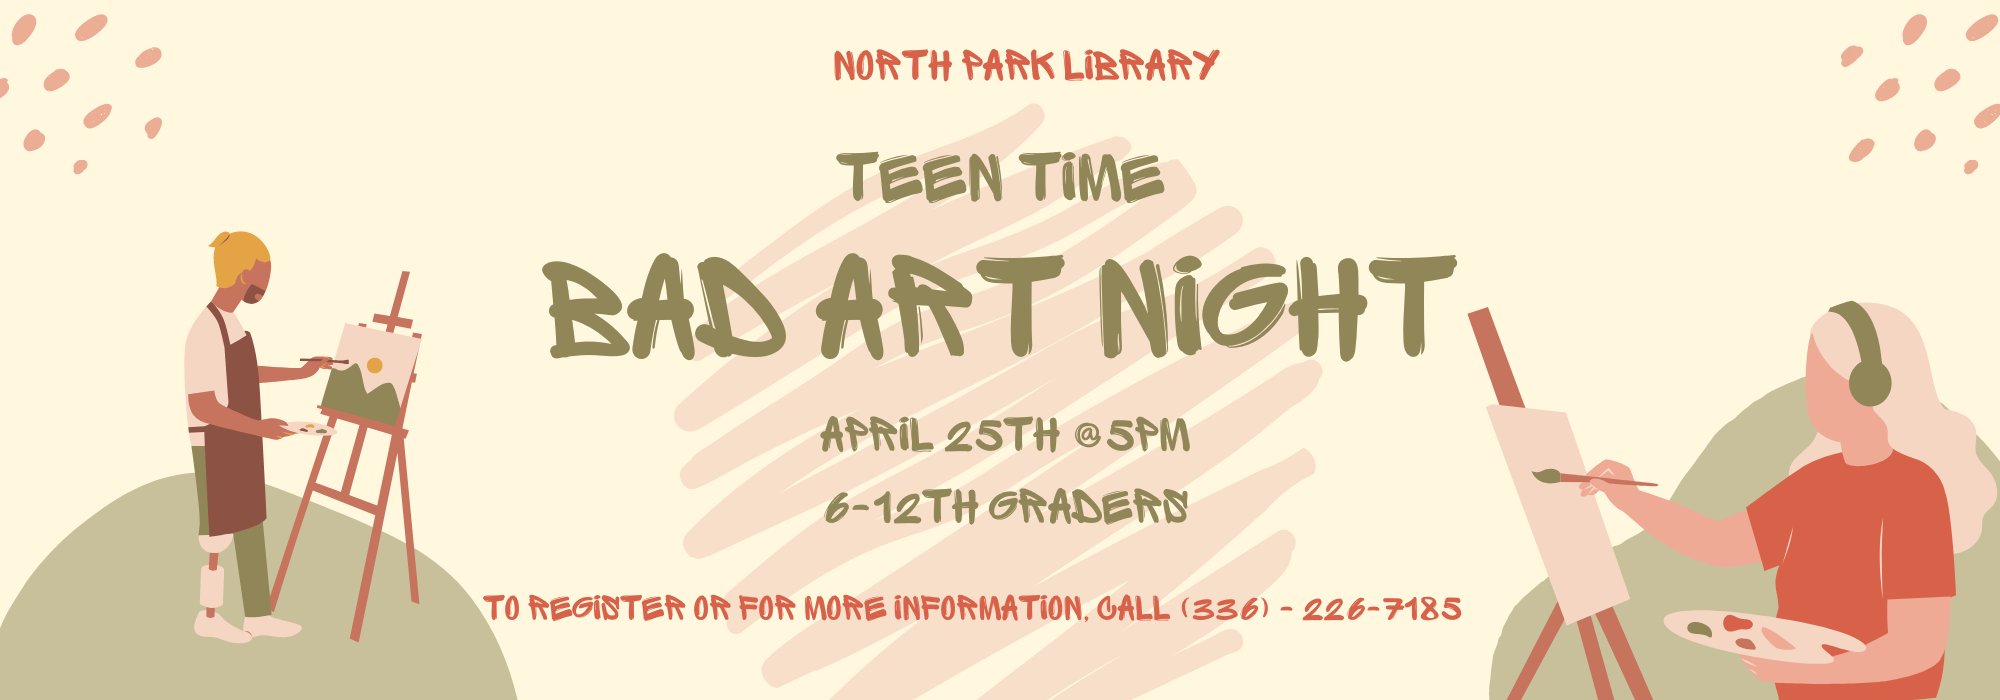 4.25 at 5 pm - Bad Art Night for Teens at North Park